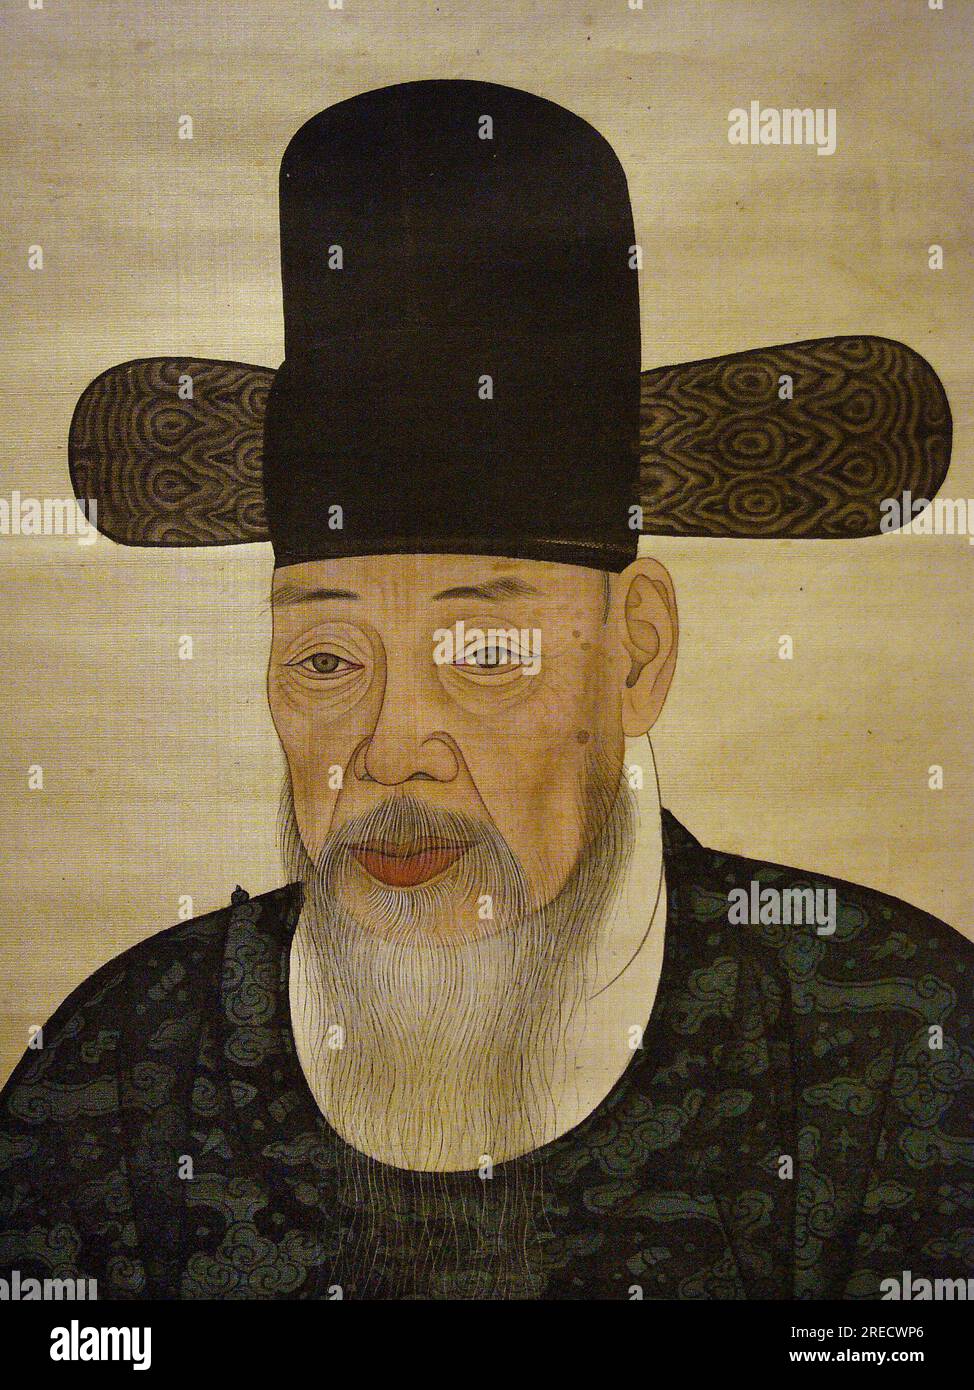 Portrait de Yi Gilbo (ou 'Yeonan'), (1700-1771) ministre, peinture sur soie sur panneau, anonyme, XVIIIe siecle sous la periode Joseon, Coree. Photographie, Musee National de Seoul, Republique de Coree, 2006. Stock Photo